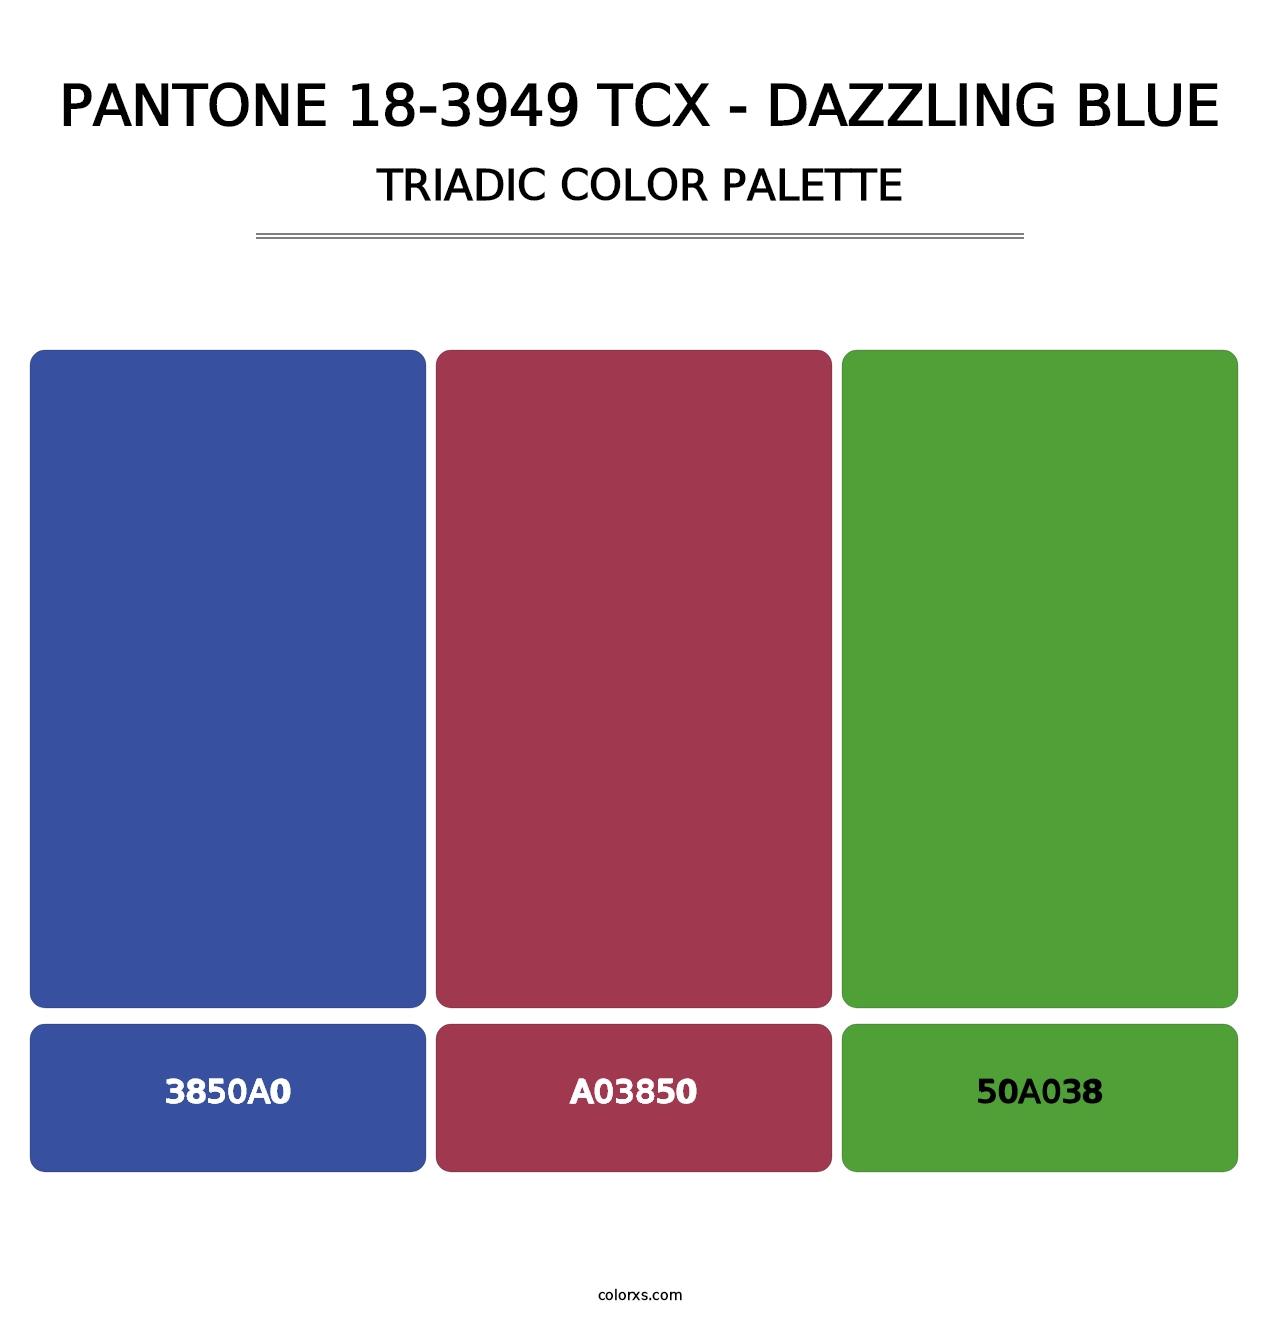 PANTONE 18-3949 TCX - Dazzling Blue - Triadic Color Palette